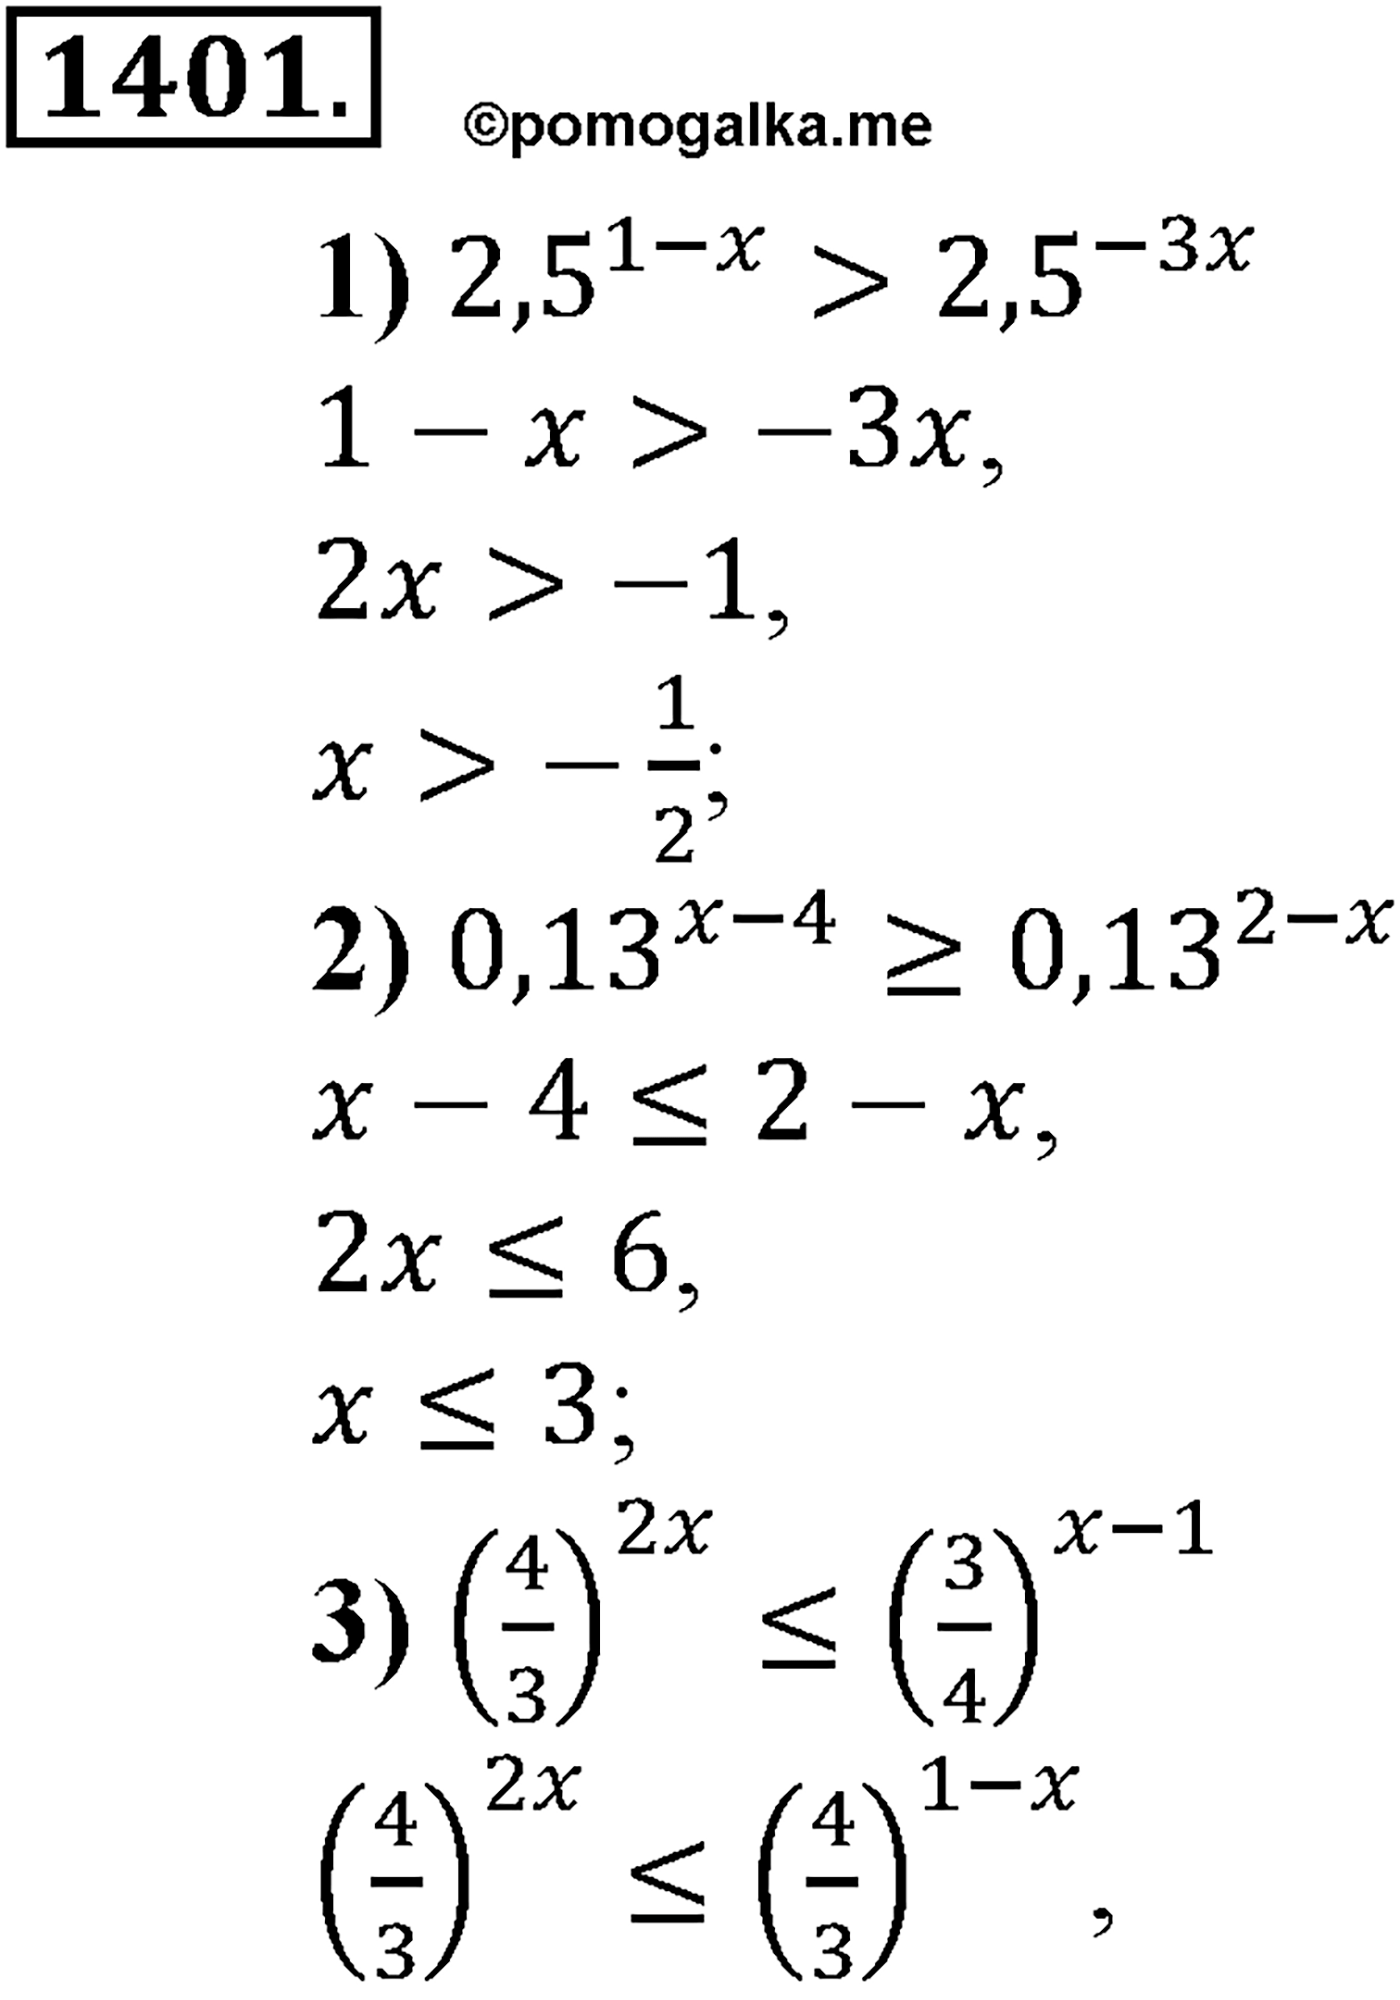 разбор задачи №1401 по алгебре за 10-11 класс из учебника Алимова, Колягина